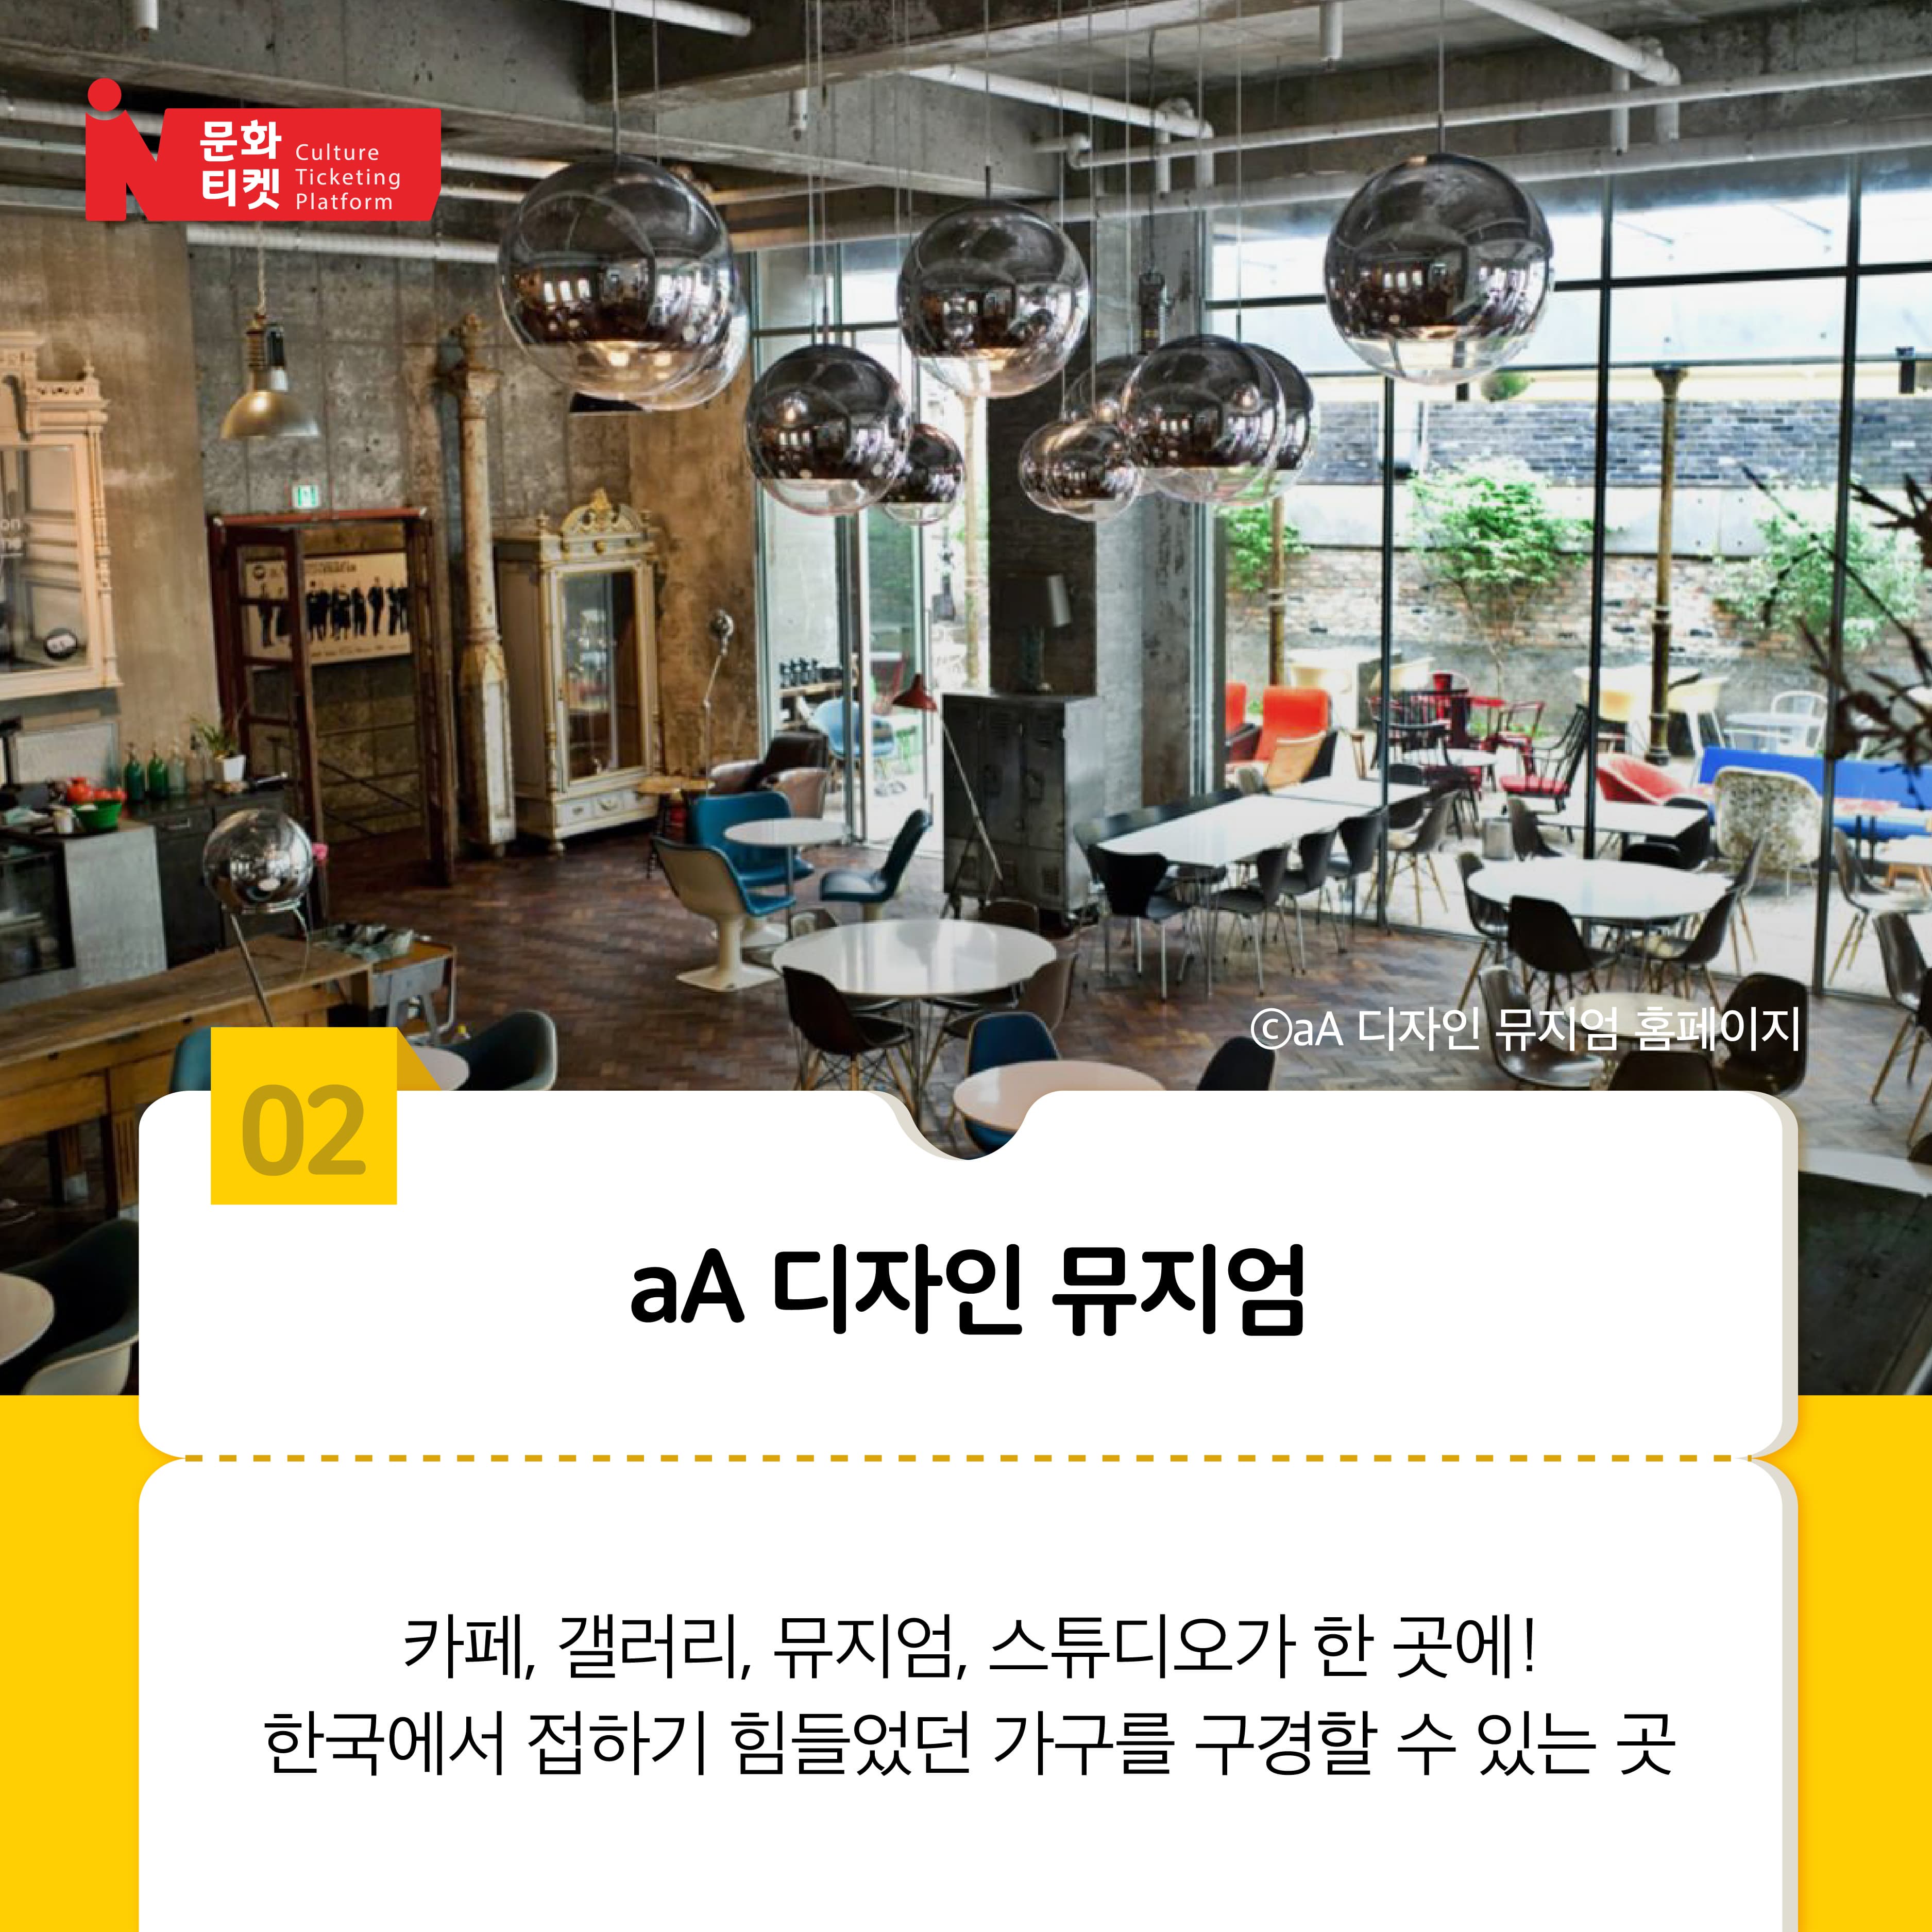 aA 디자인 뮤지엄
카페, 갤러리, 뮤지엄, 스튜디오가 한 곳에! 한국에서 접하기 힘들었던 가구를 구경할 수 있는 곳!
출처: aA 디자인 뮤지엄